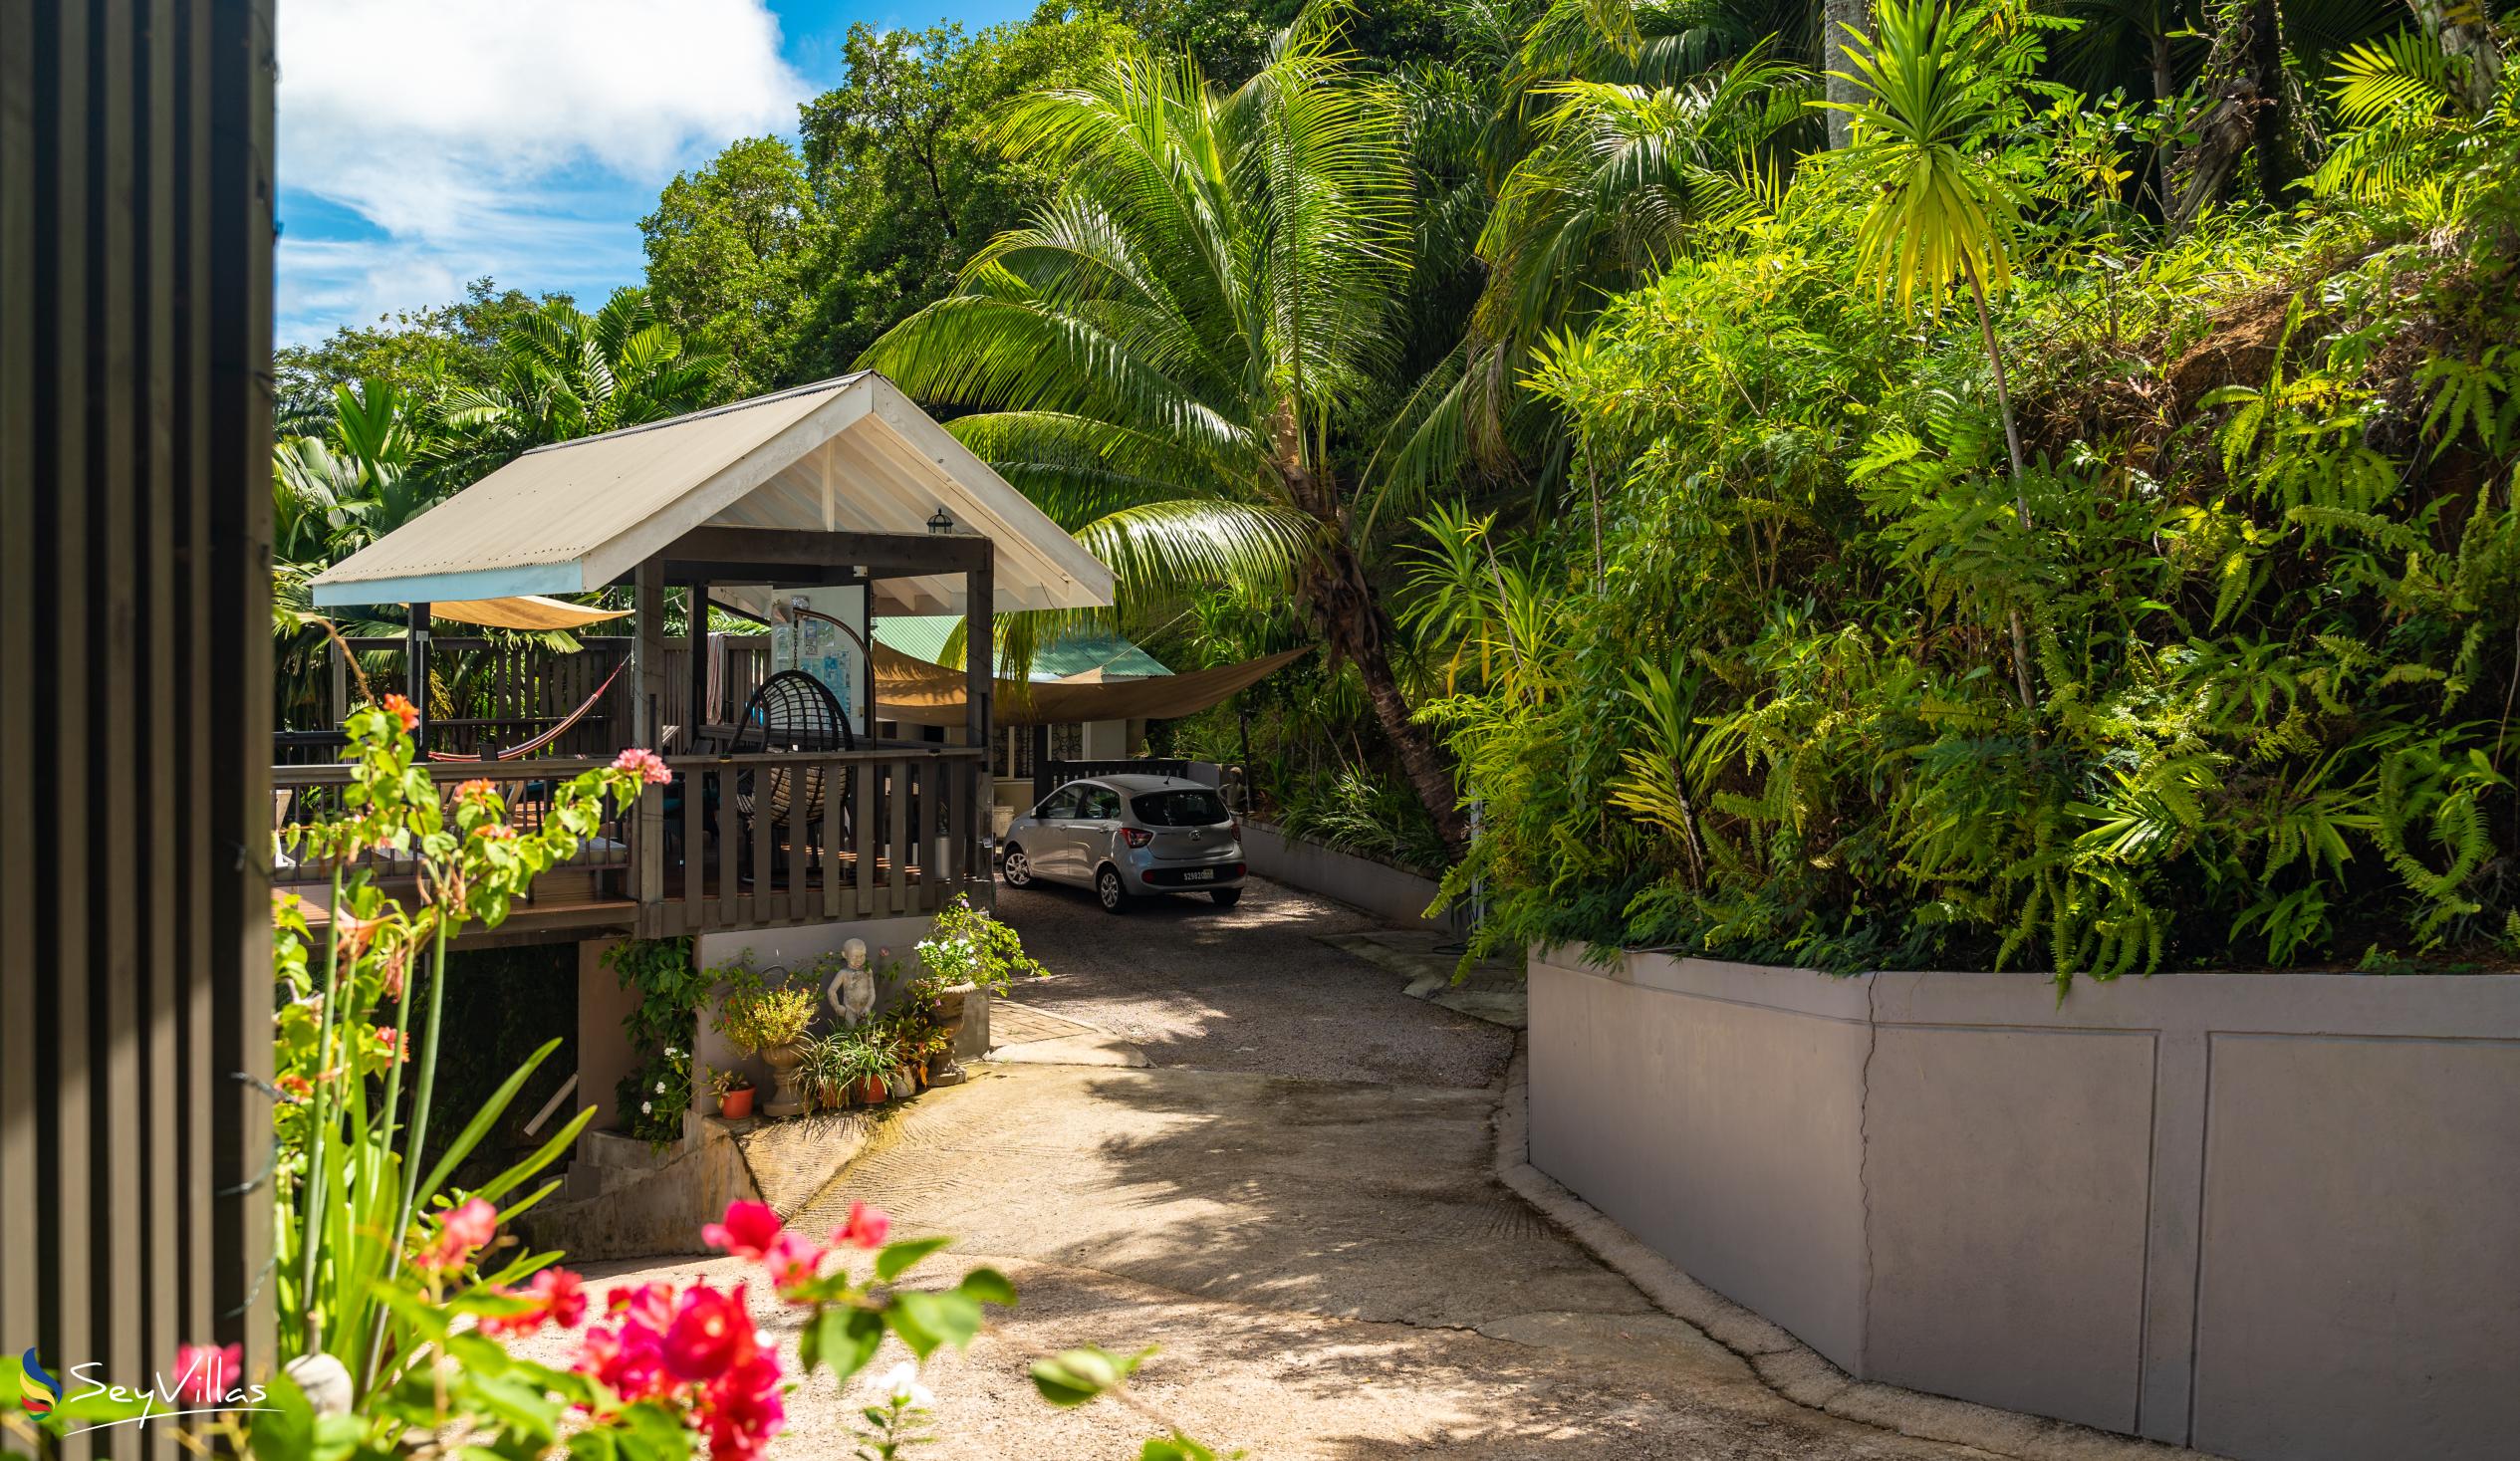 Photo 23: Stephna Residence - Outdoor area - Mahé (Seychelles)